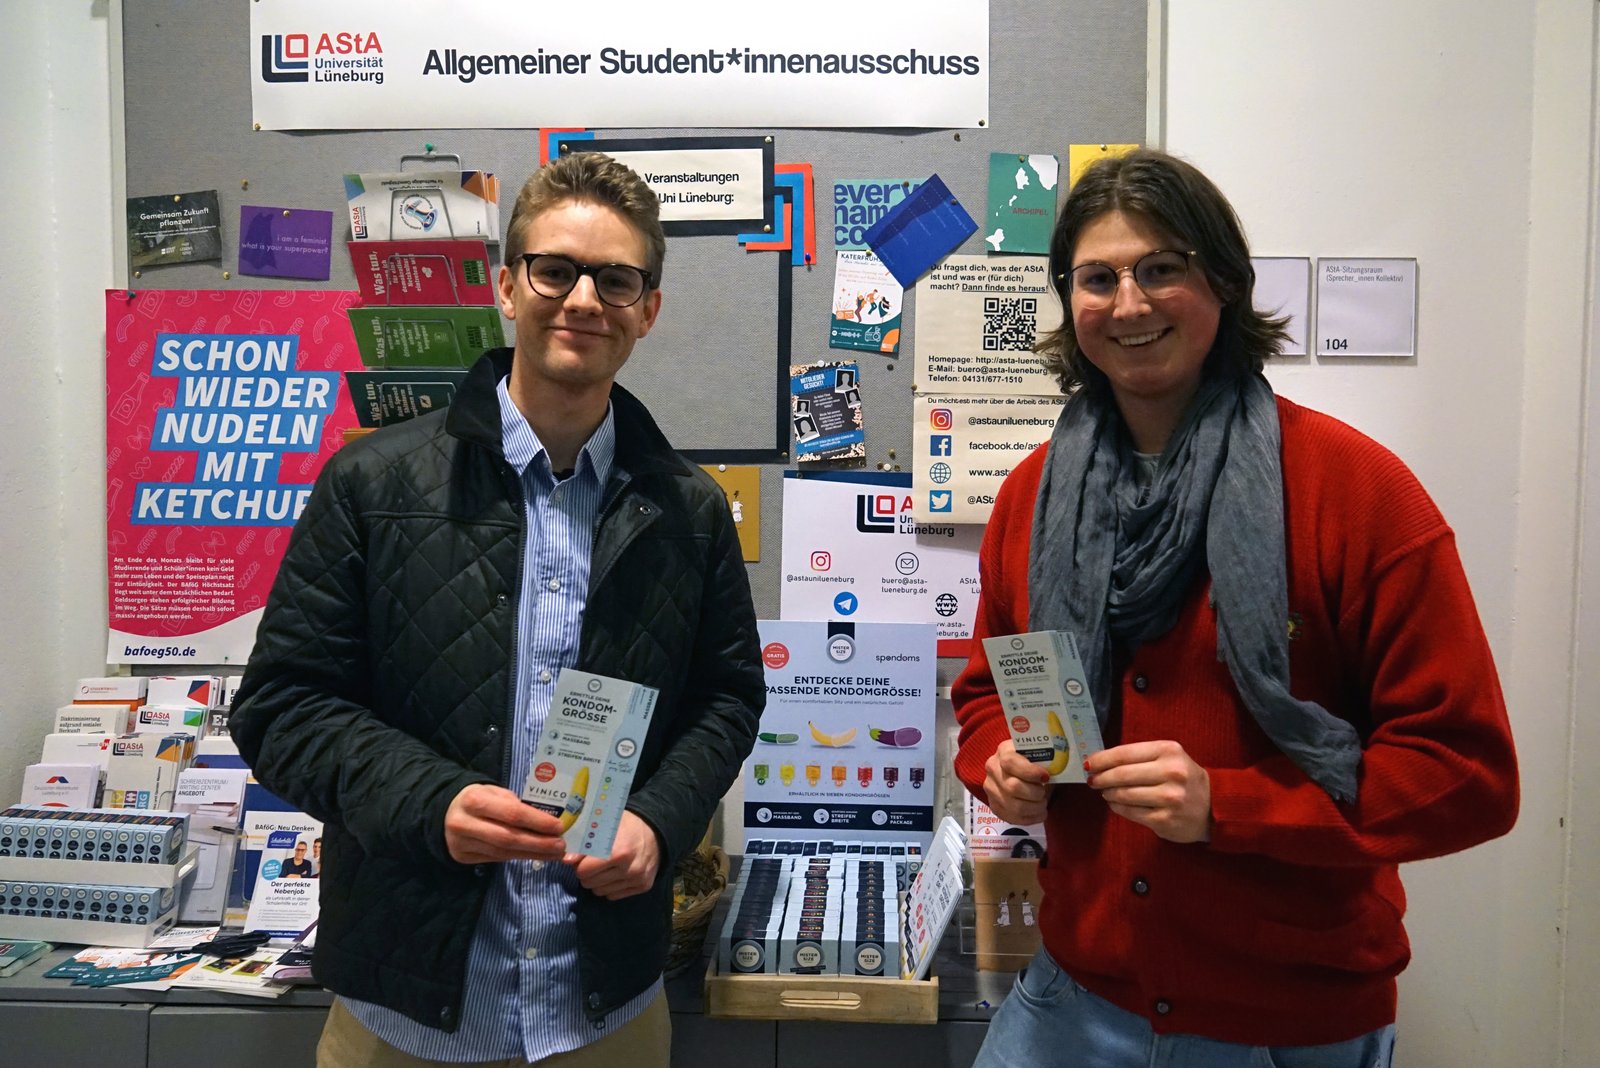 Luis, de Spondoms (izquierda), abre el dispensador gratuito de preservativos junto con Max, de la AStA de la Universidad Leuphana de Luneburgo (derecha).